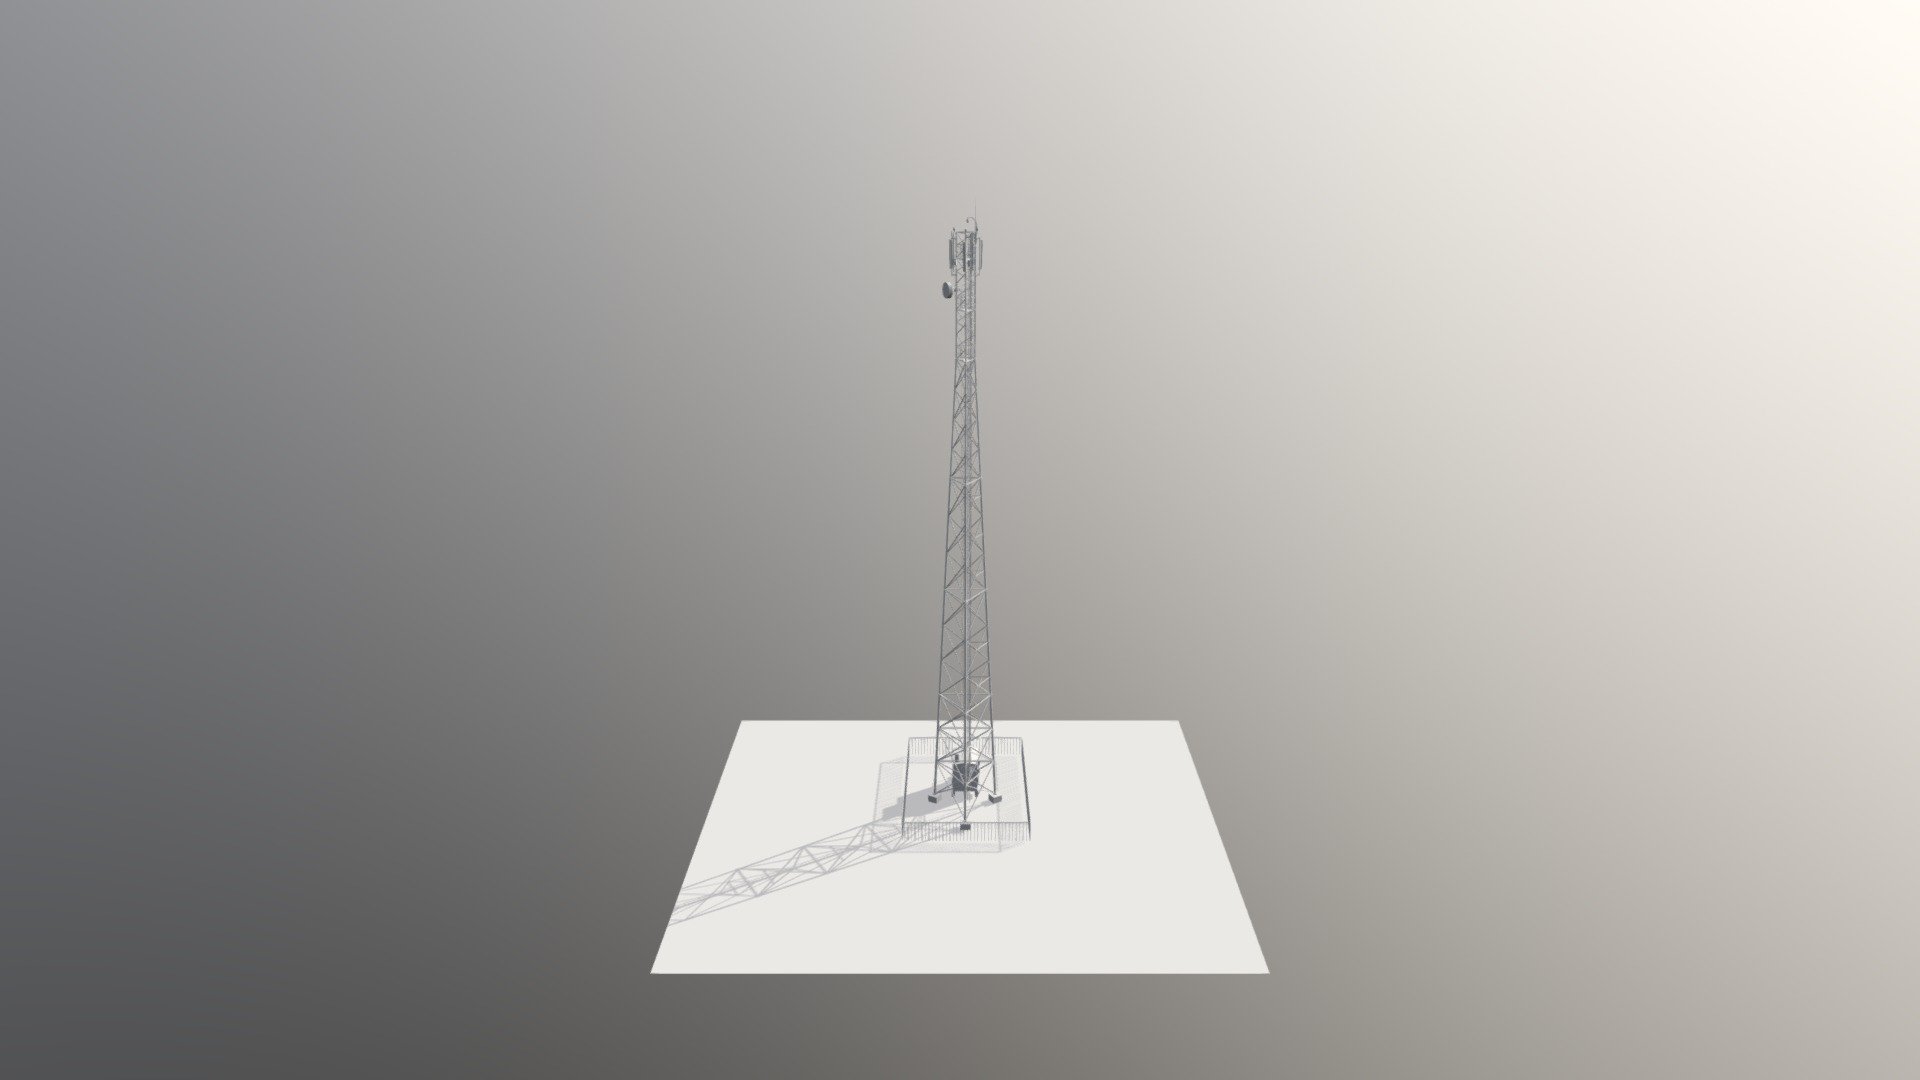 Cellular base station on the tower 50 m - Cellular base station on the tower 50 m - 3D model by ihar.valasatau 3d model